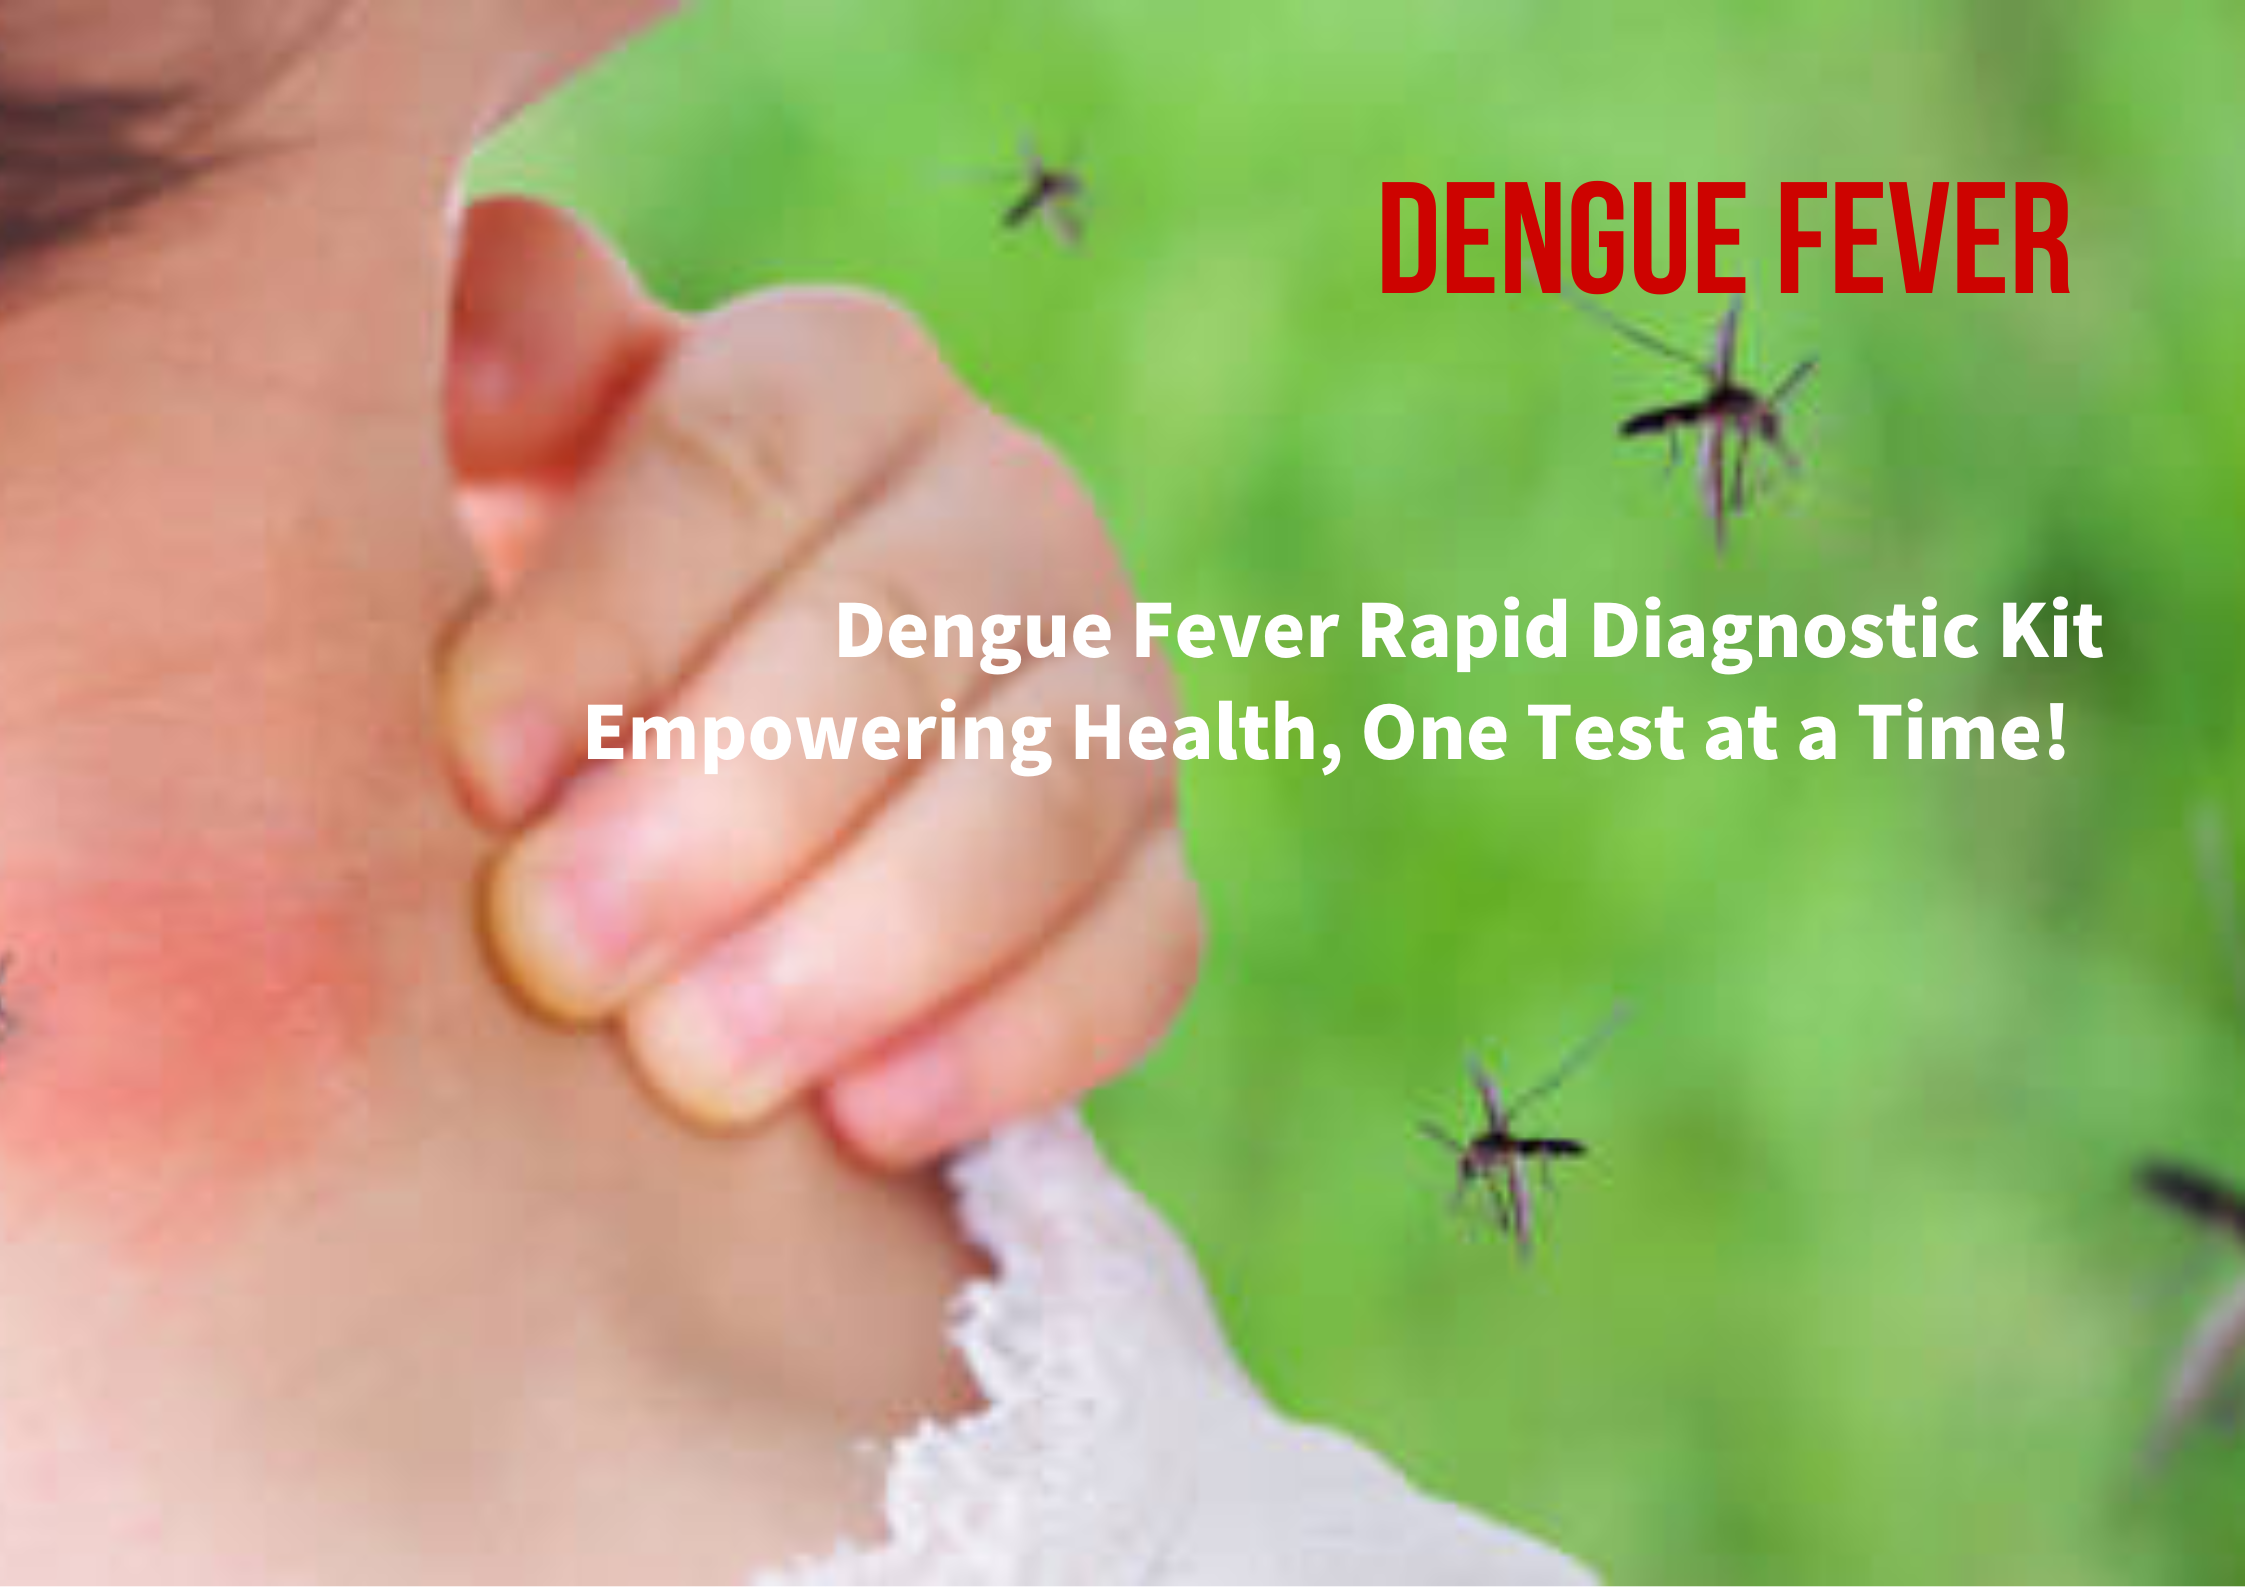 ڈینگی بخار کی تیز تشخیصی کٹ: صحت کو بااختیار بنانا، ایک وقت میں ایک ٹیسٹ!